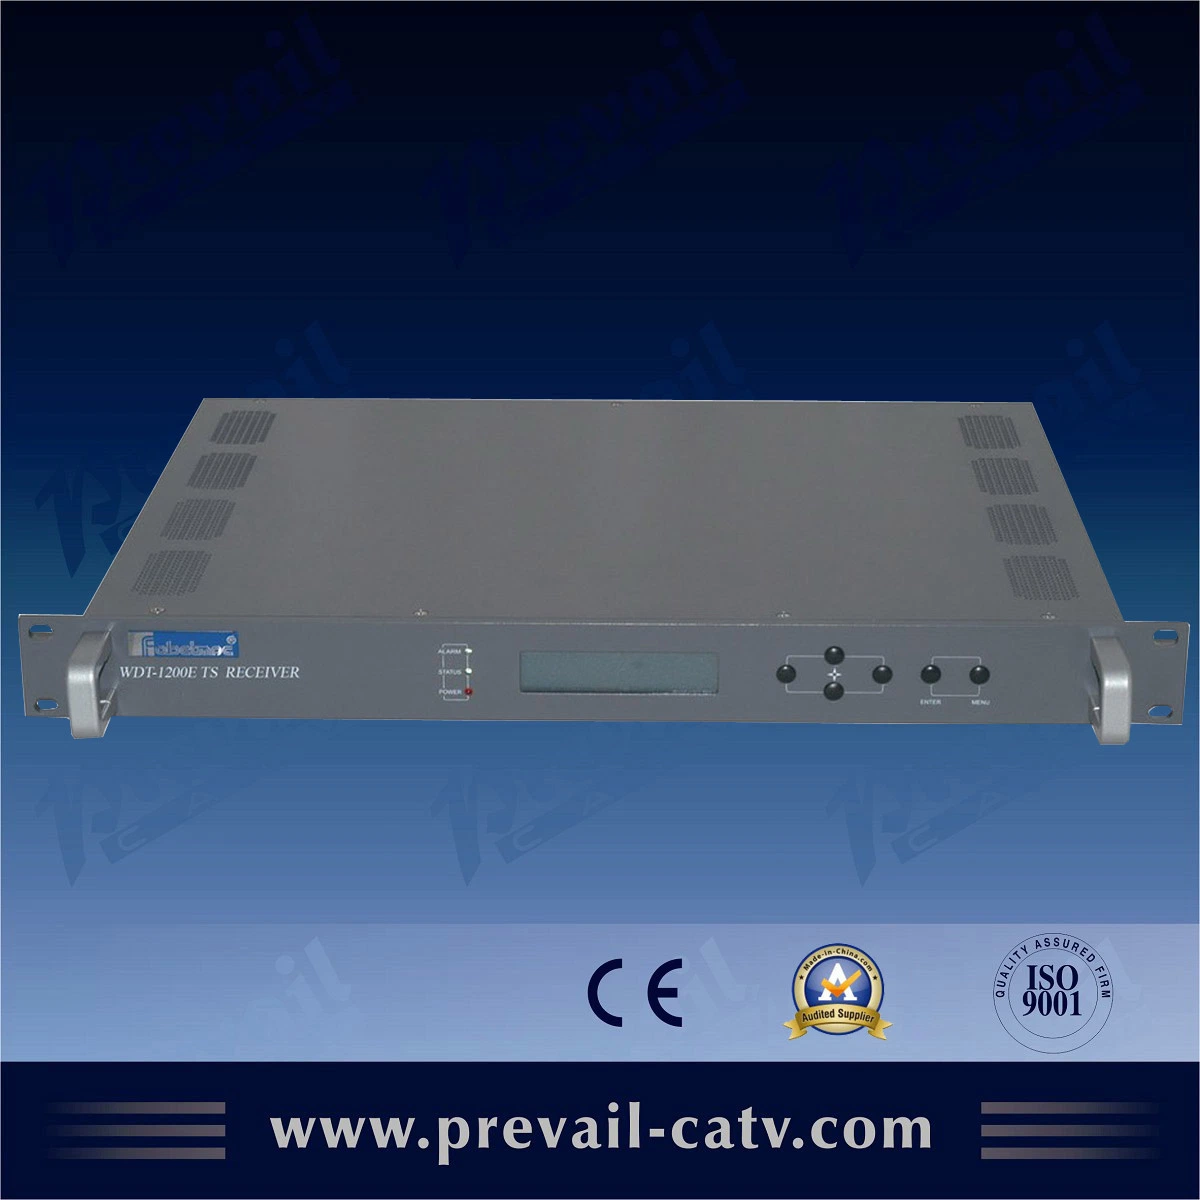 جهاز استقبال بث الأقمار الصناعية DVB IPTV من الشركة المصنعة للمحترفين